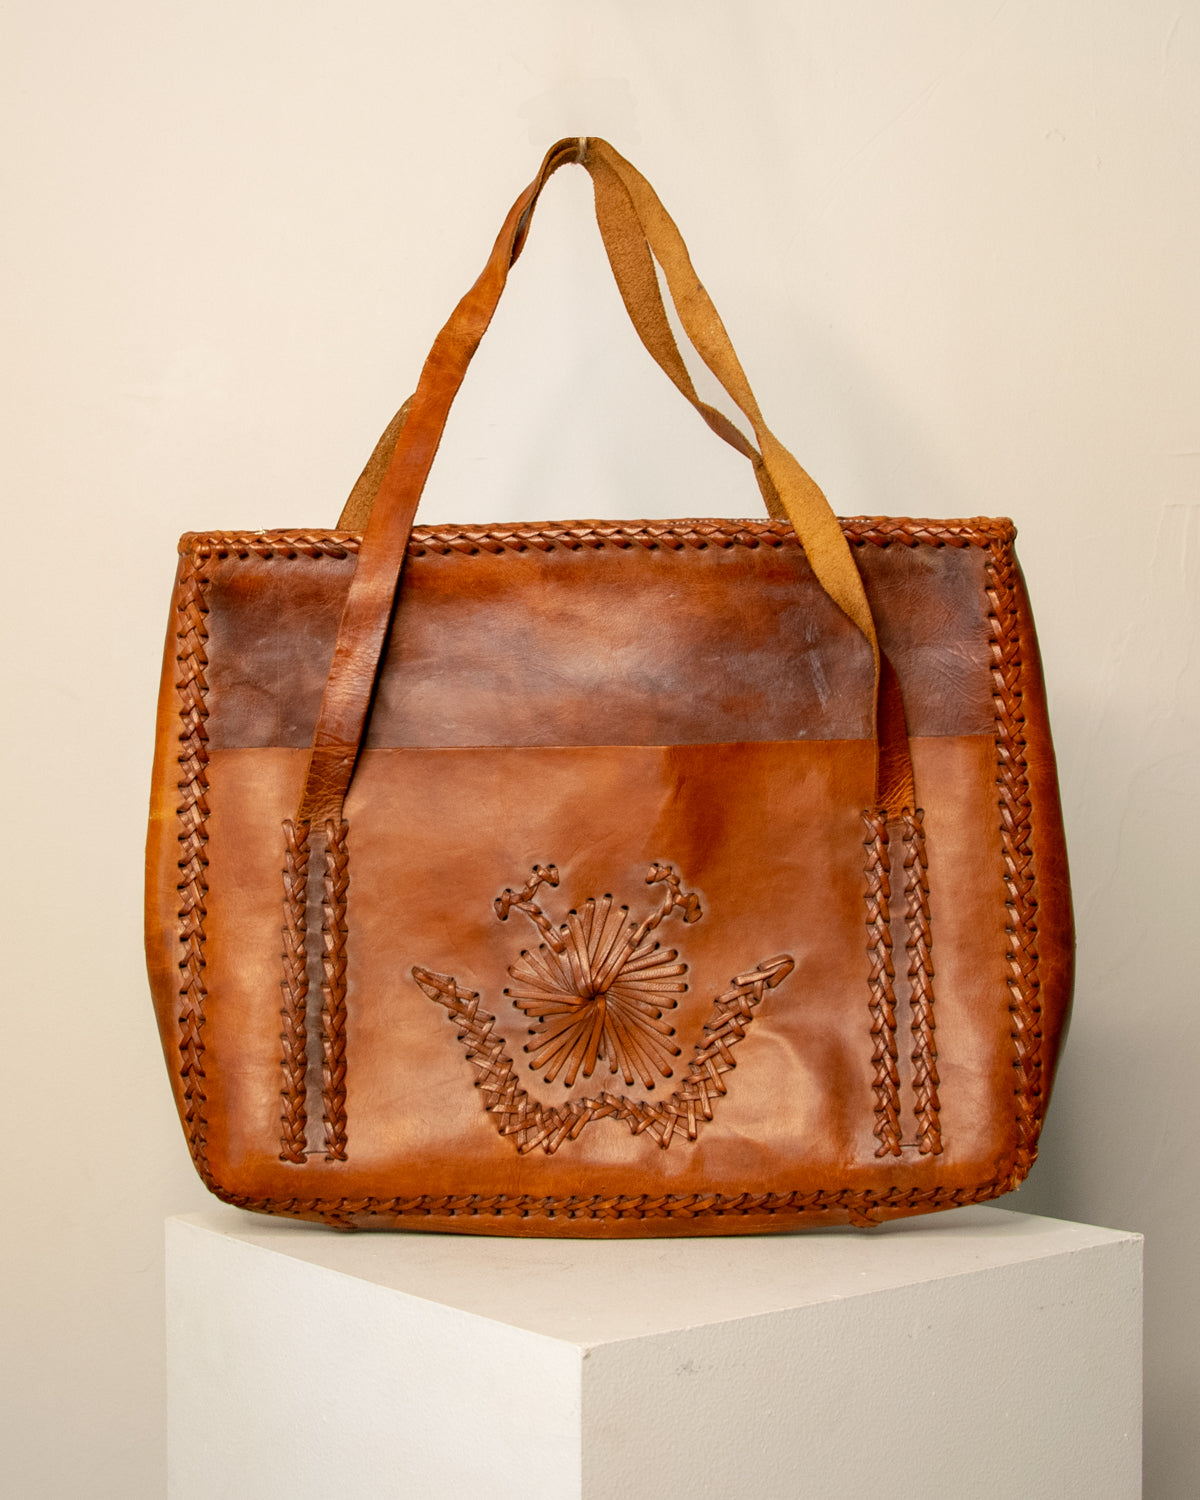 Vintage Braided Leather Handbag